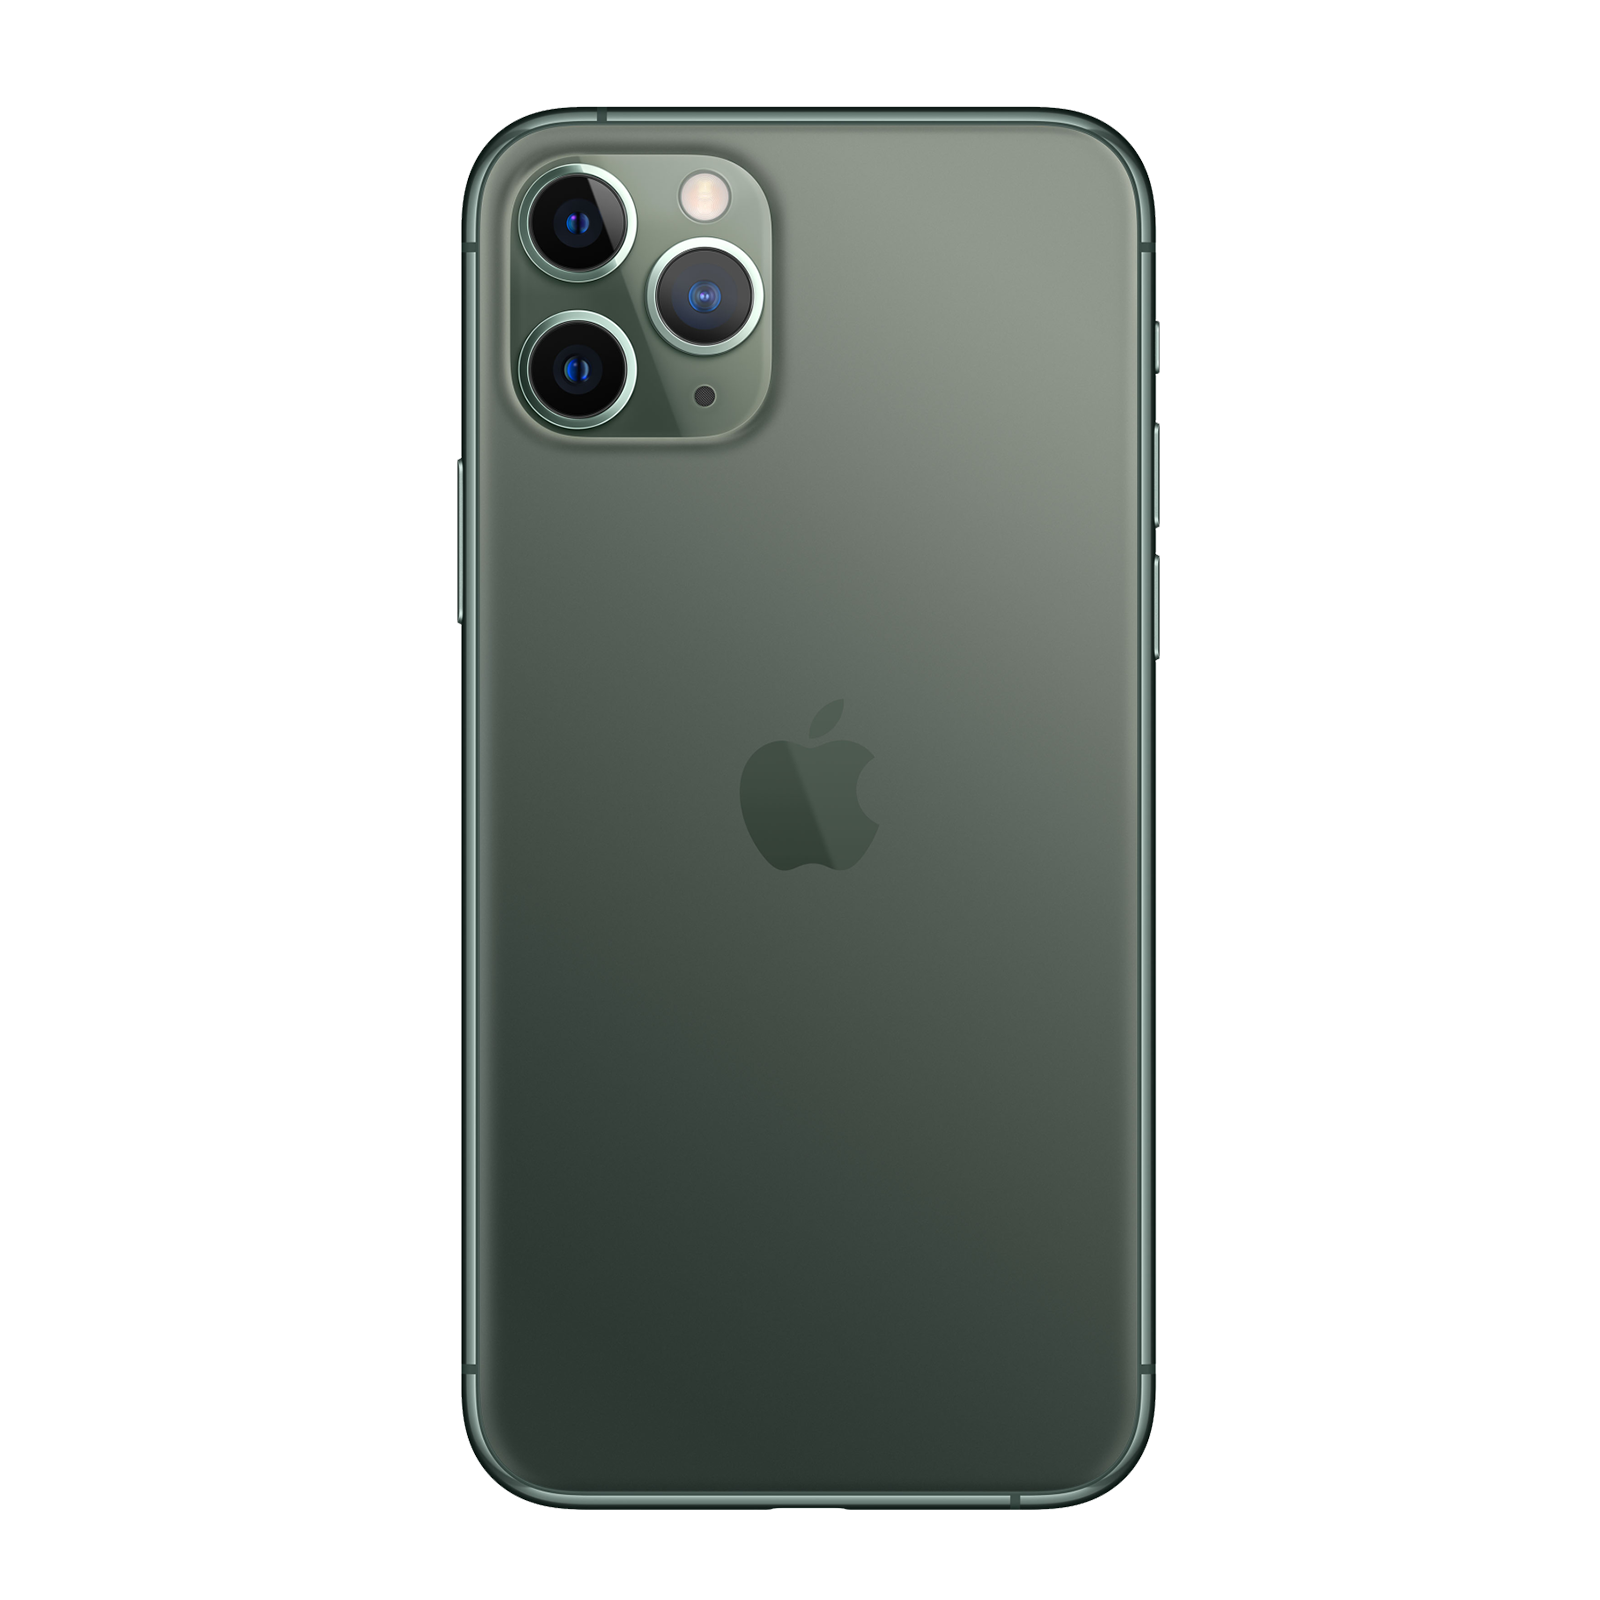 Apple iPhone 11 Pro 256GB Nachtgrün Fair - Ohne Vertrag